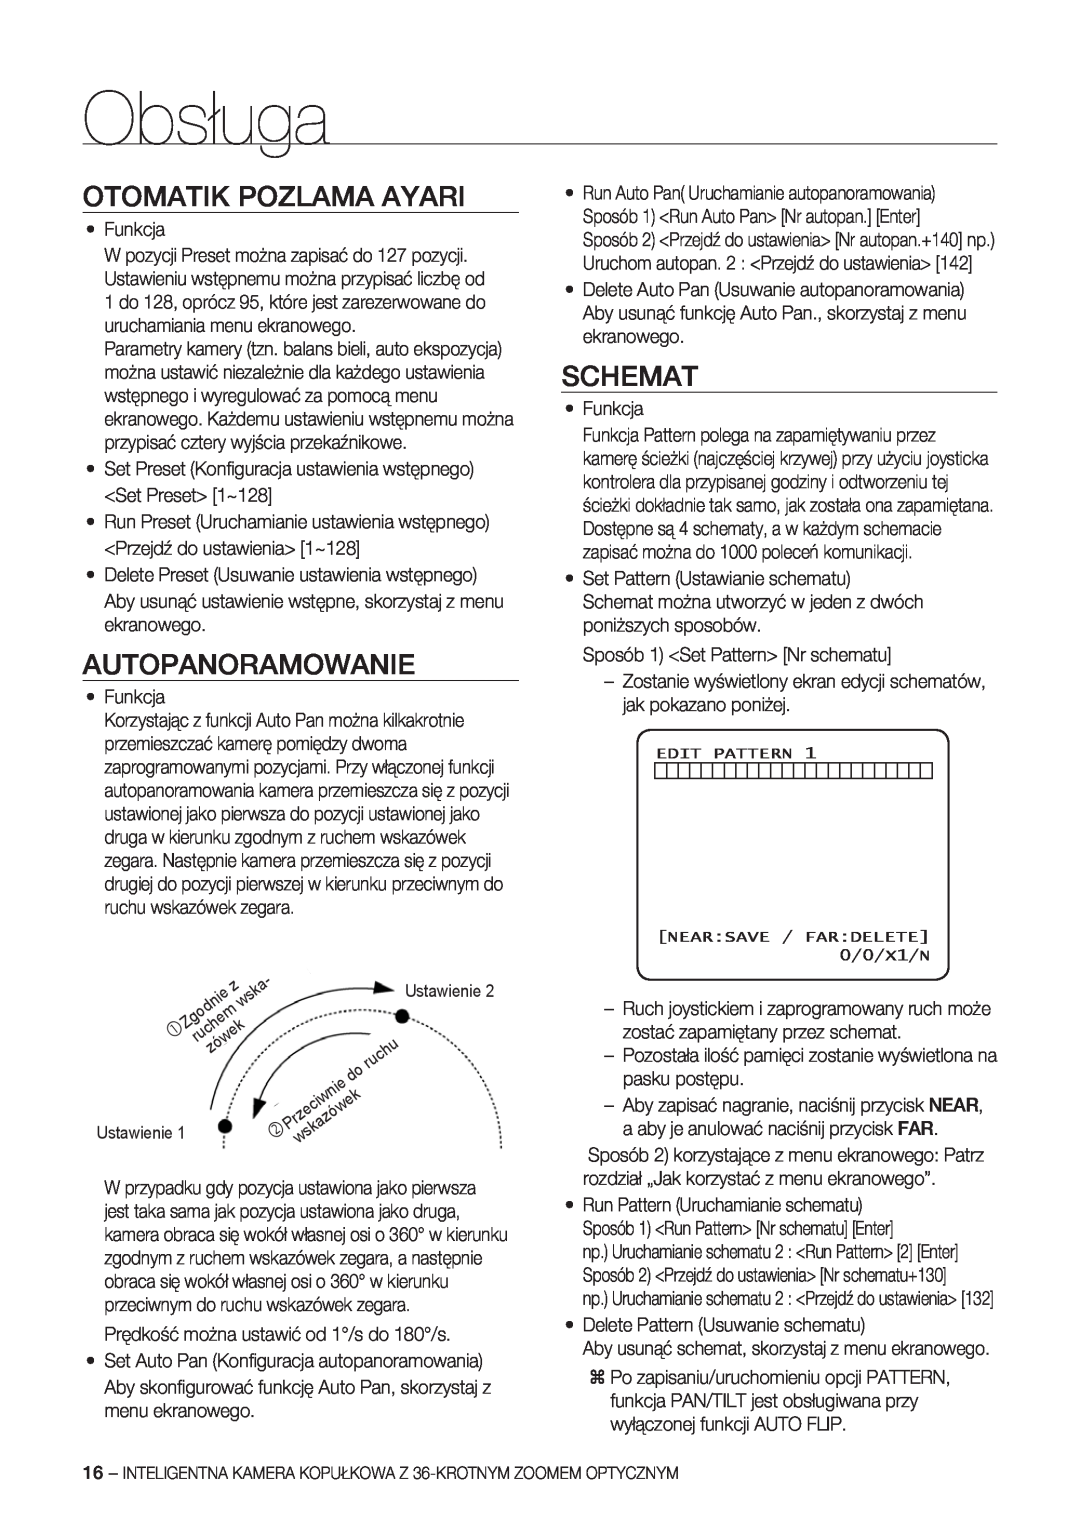 Samsung SCC-C7478P manual Otomatik Pozlama Ayari, Autopanoramowanie, Schemat, Obsługa, wska, Zgodnie, ruchem, zówek 